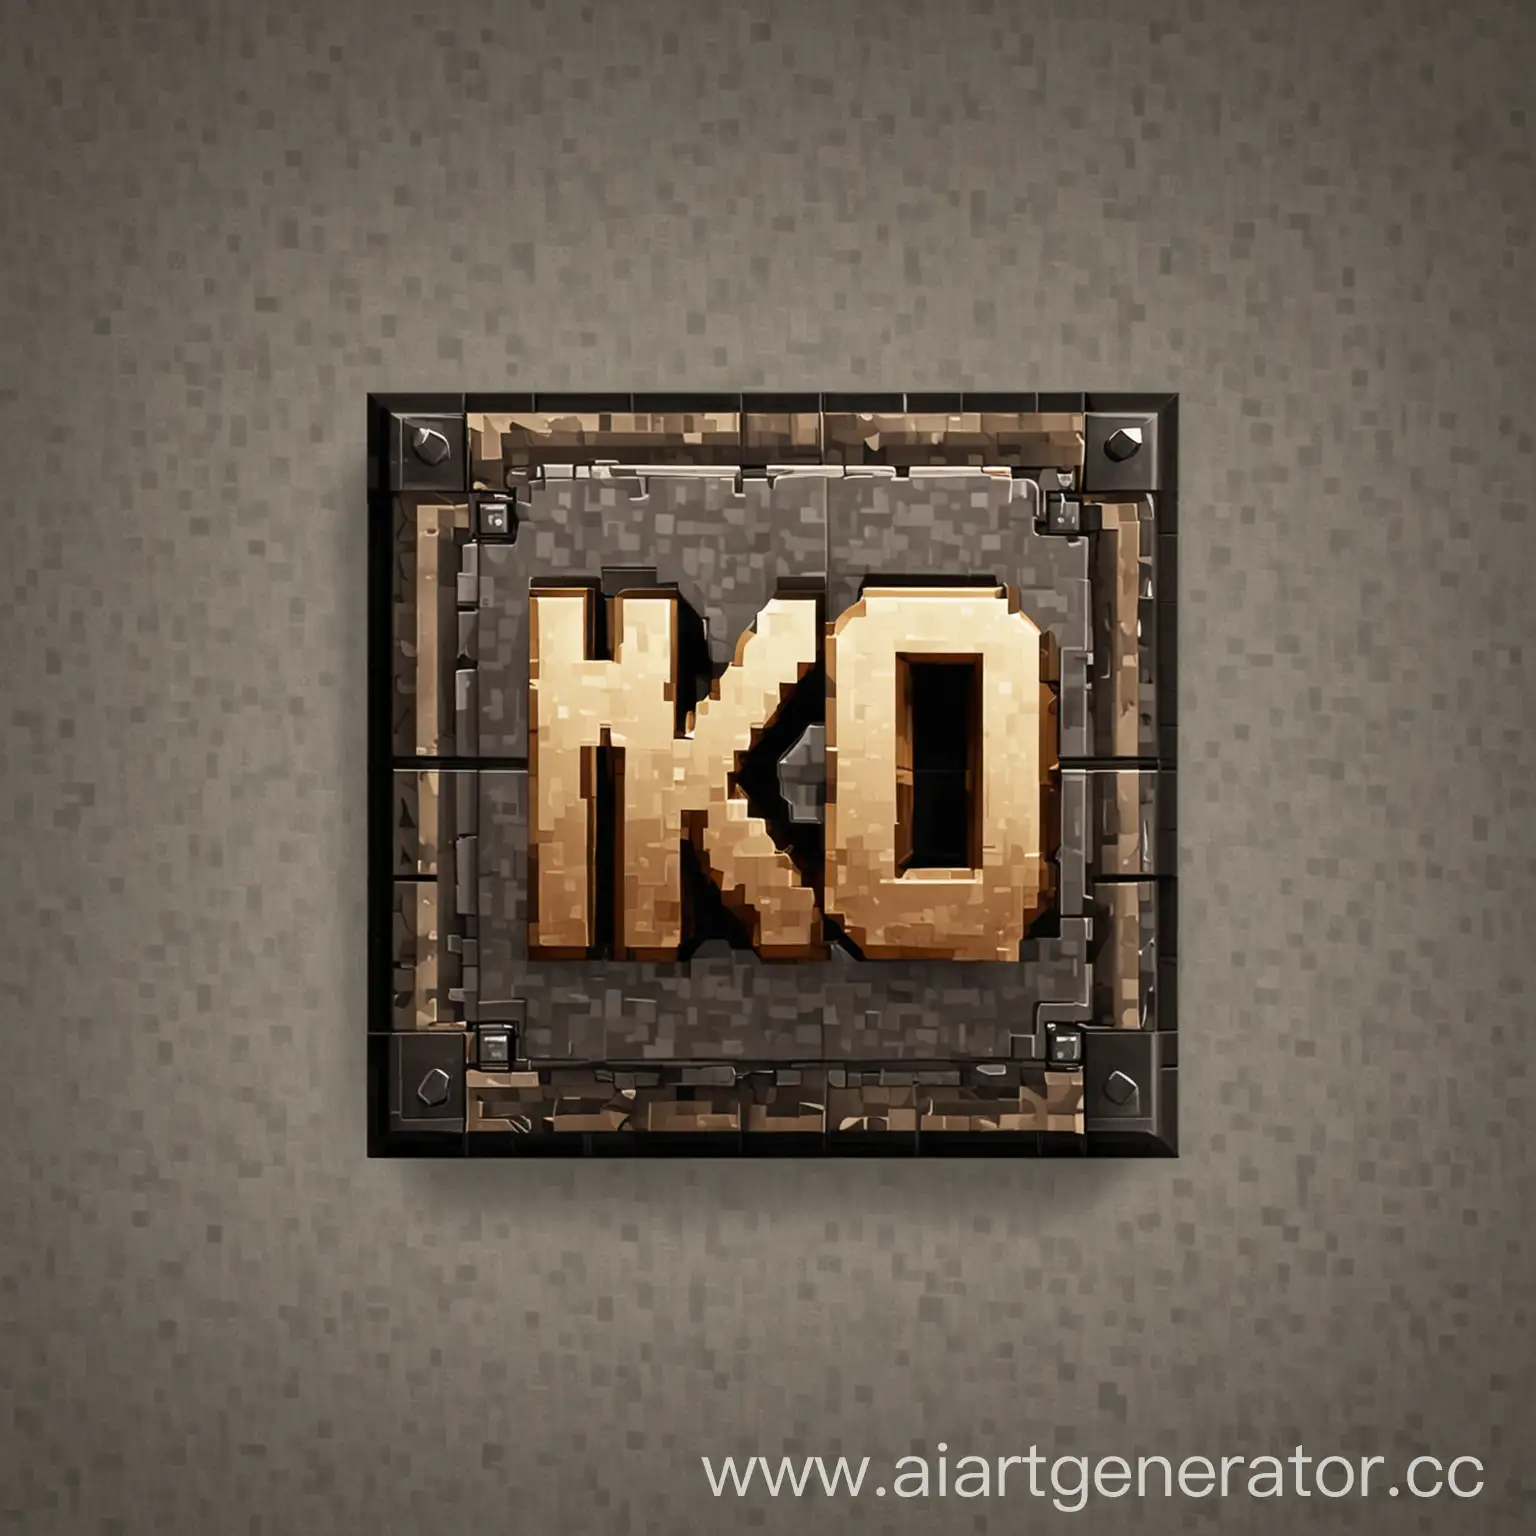 Иконка сервера в стиле майнкрафт с надписью К.Б.О

